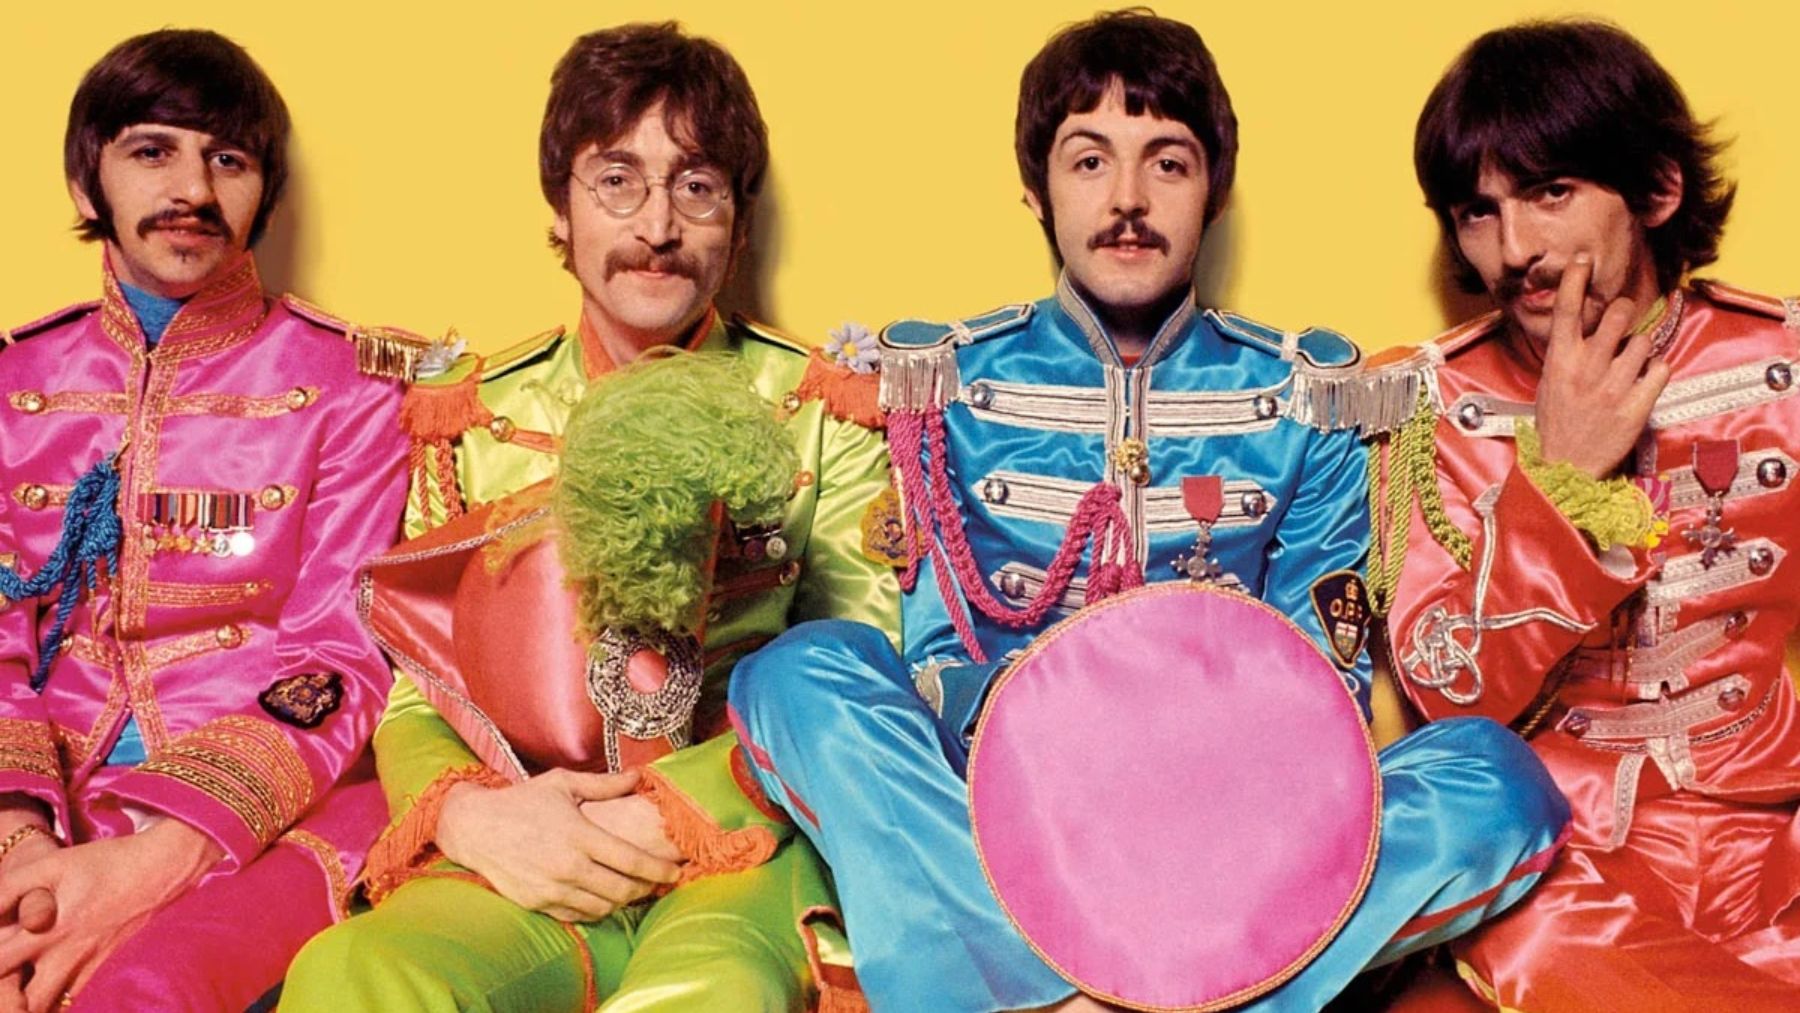 La historia de Los Beatles y el motivo de su separación